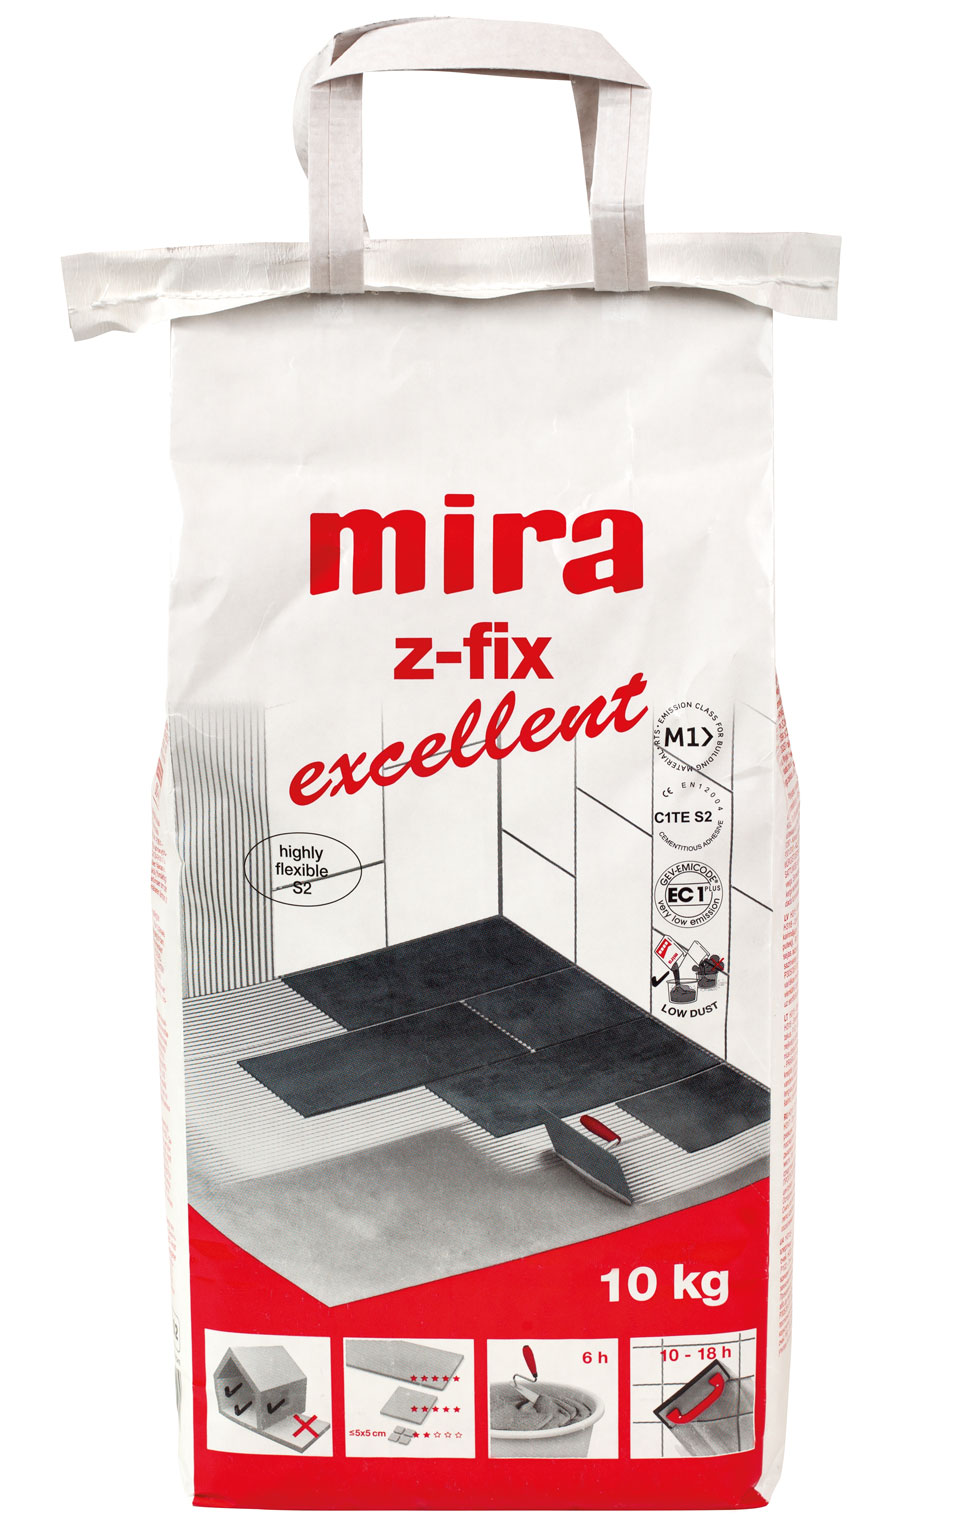 Mira z-fix excellent 10kg